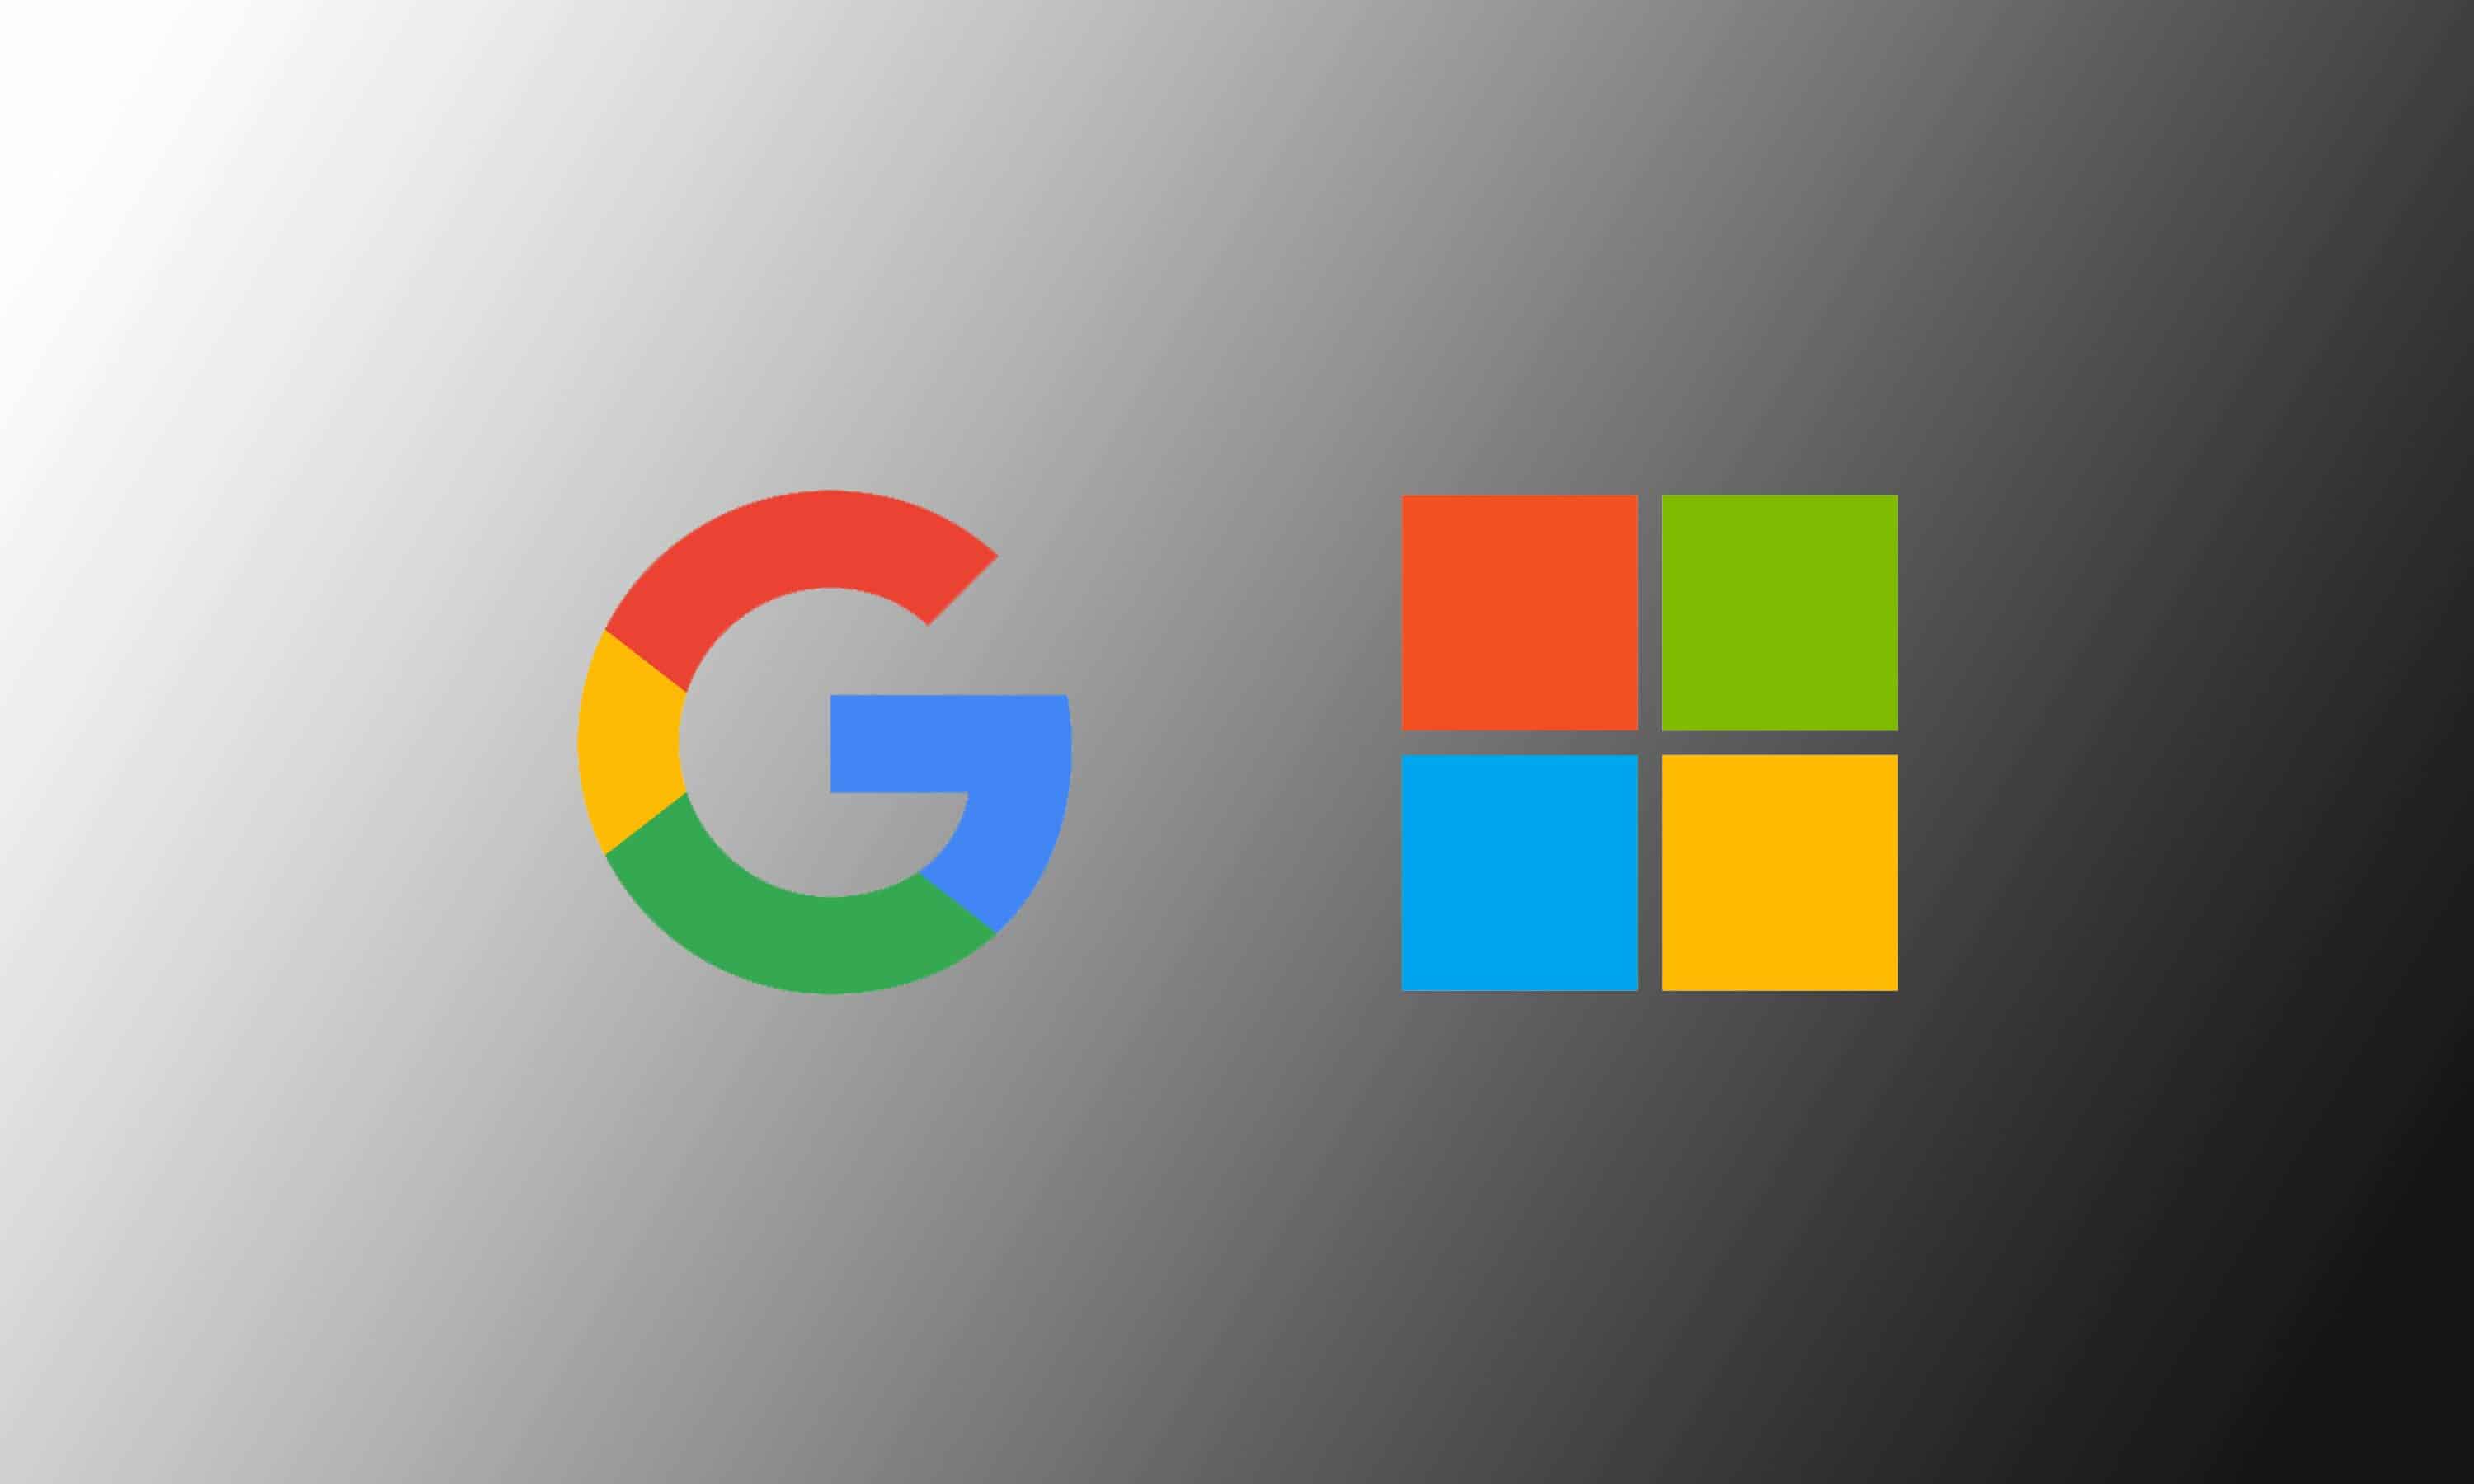 Microsoft pokušava s agresivnijim oglasima Bing, Edge, ali se i dalje bori s Googleom